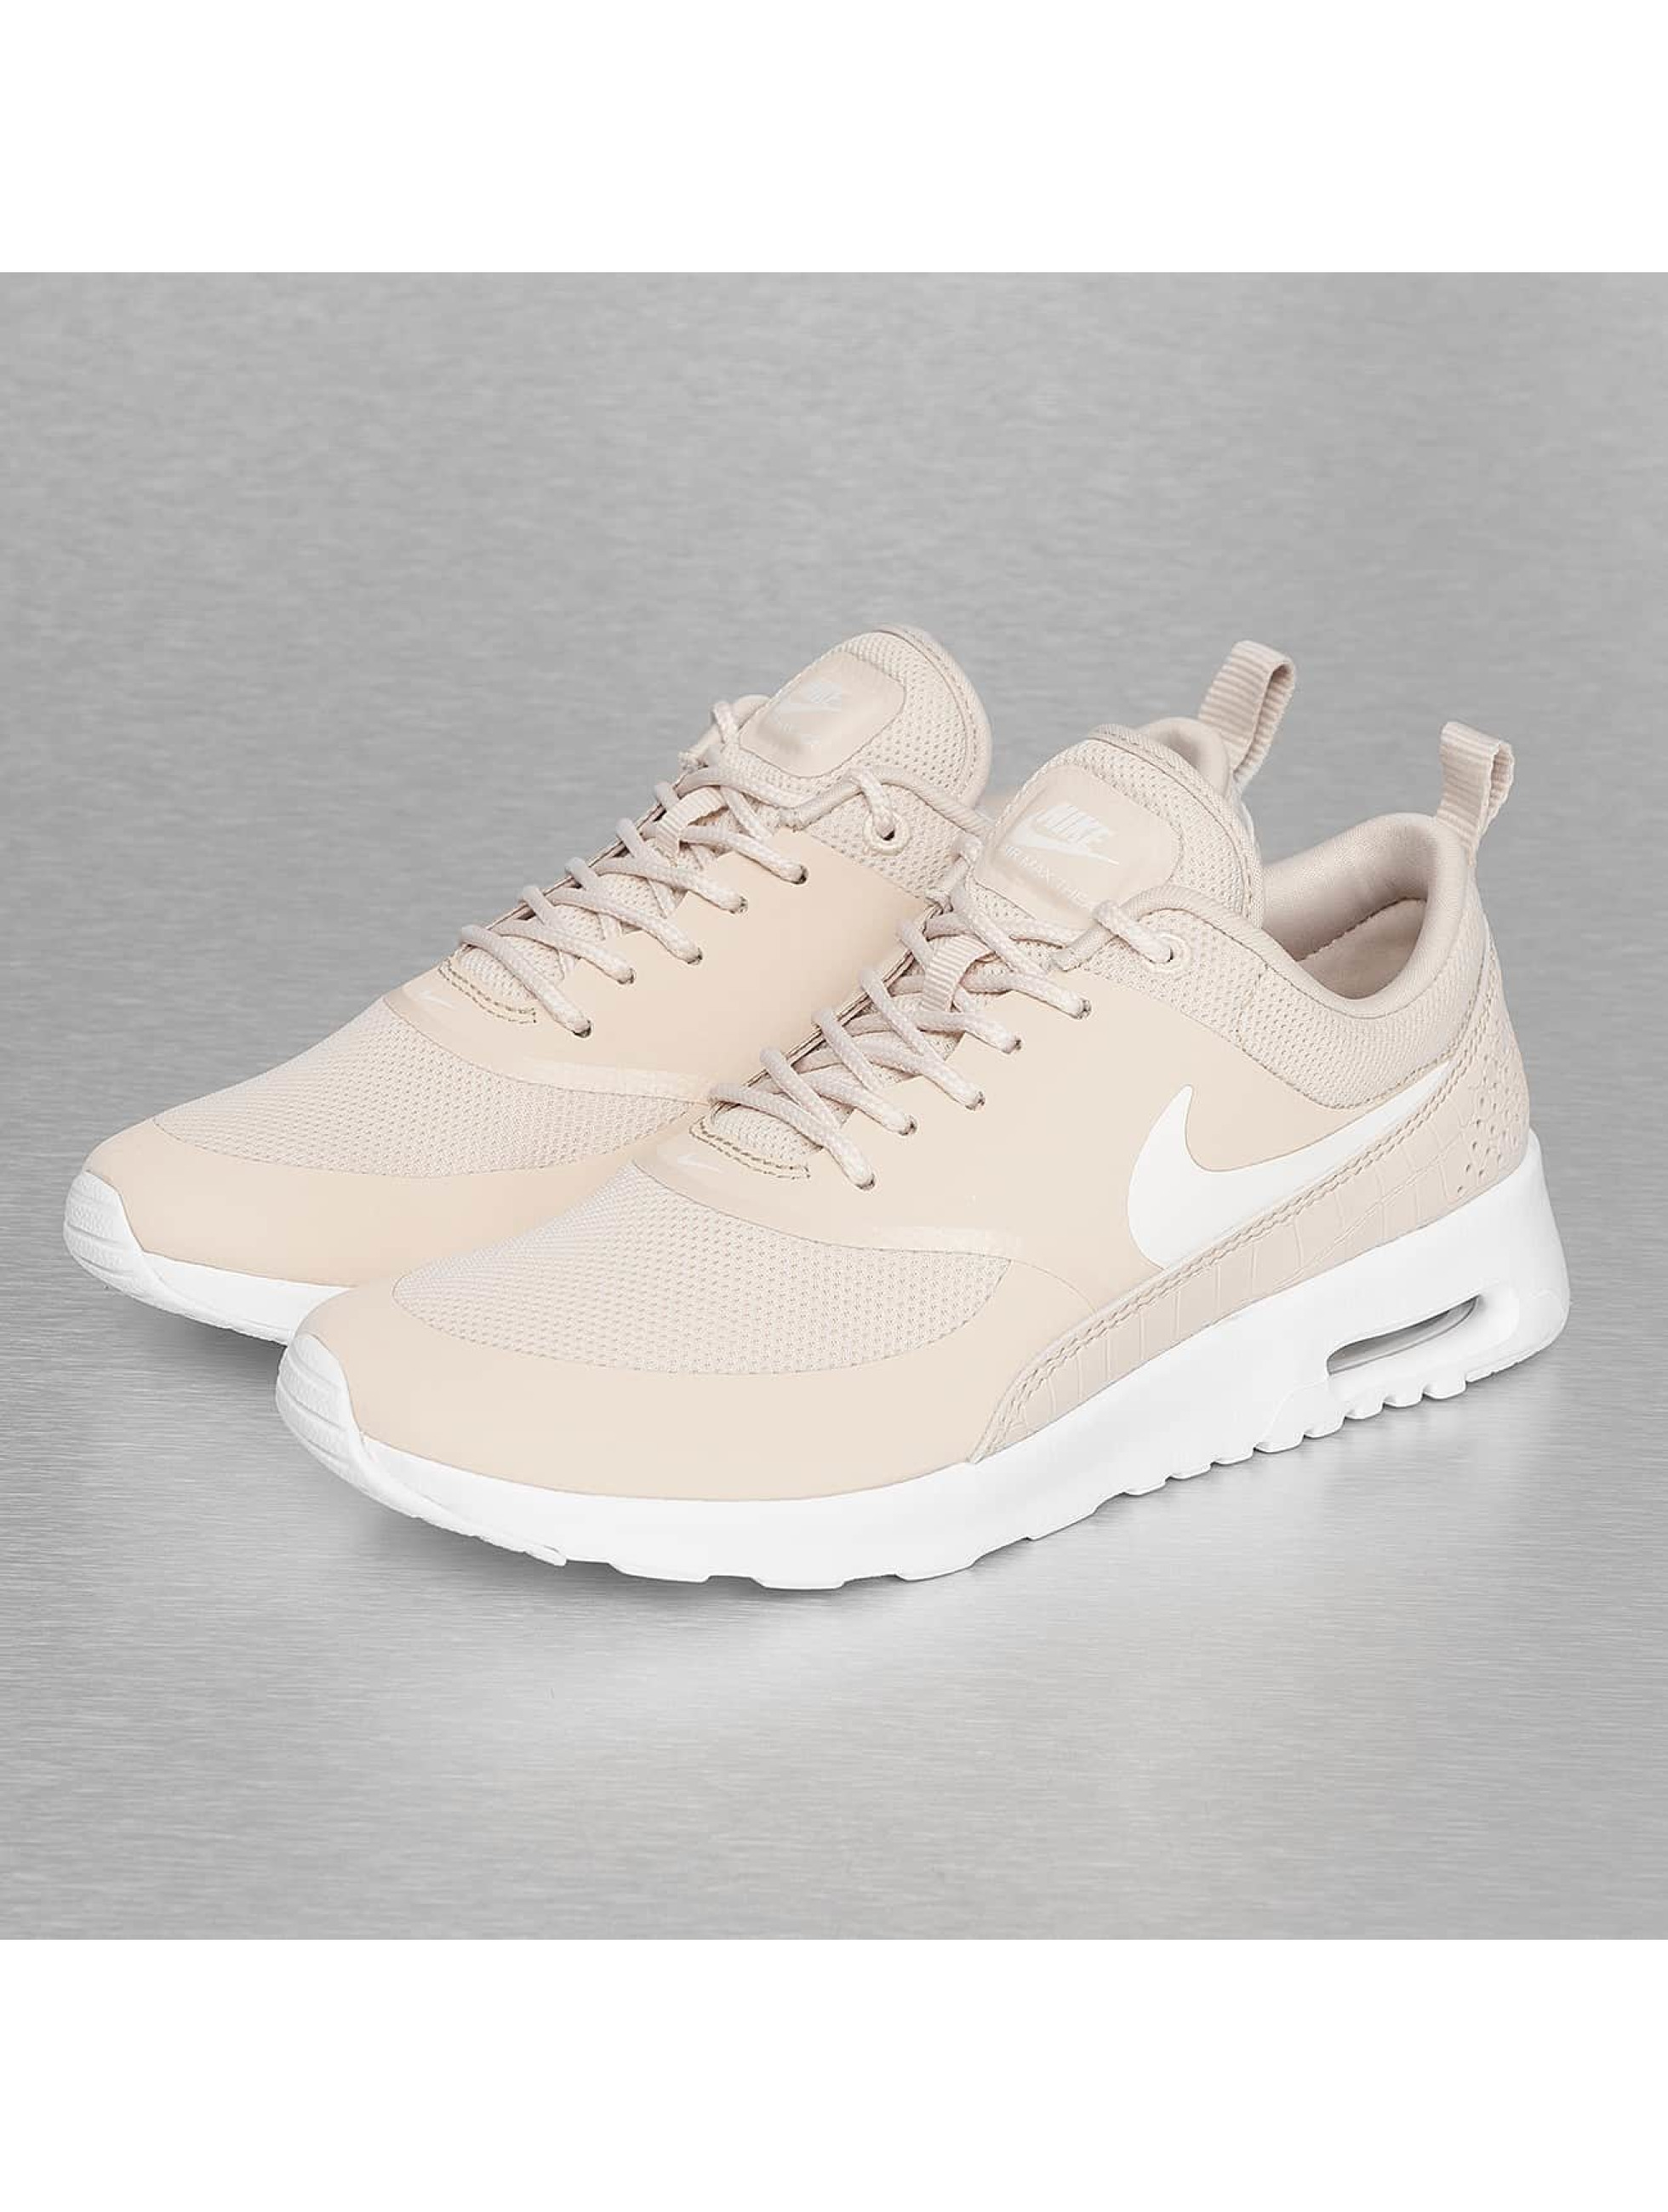 Nike schoen / sneaker Air Max Thea in beige